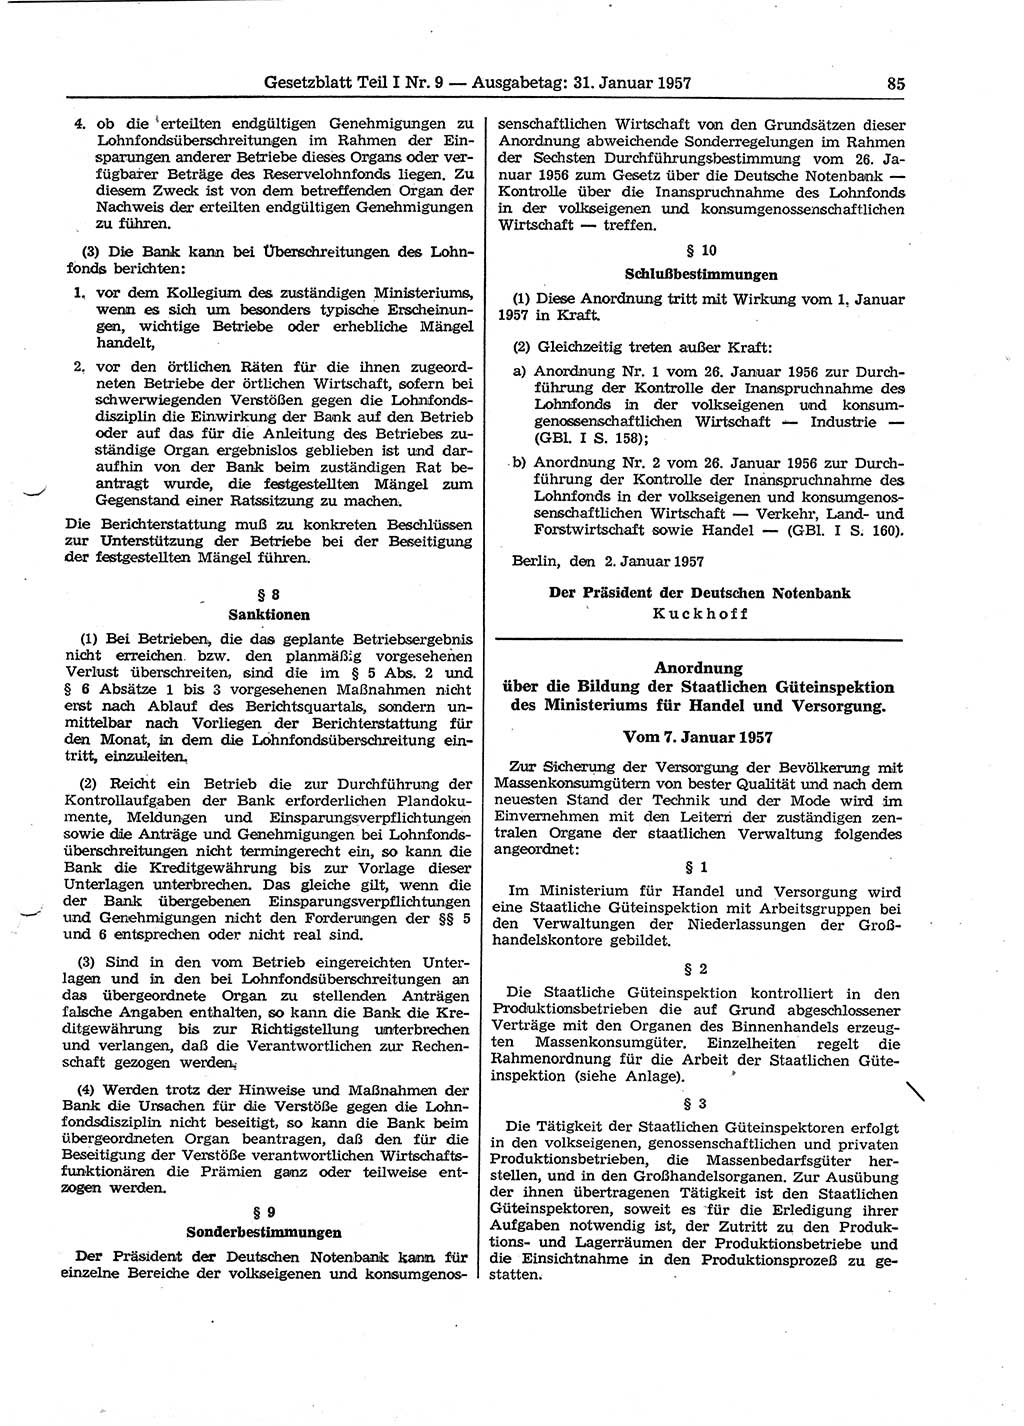 Gesetzblatt (GBl.) der Deutschen Demokratischen Republik (DDR) Teil Ⅰ 1957, Seite 85 (GBl. DDR Ⅰ 1957, S. 85)